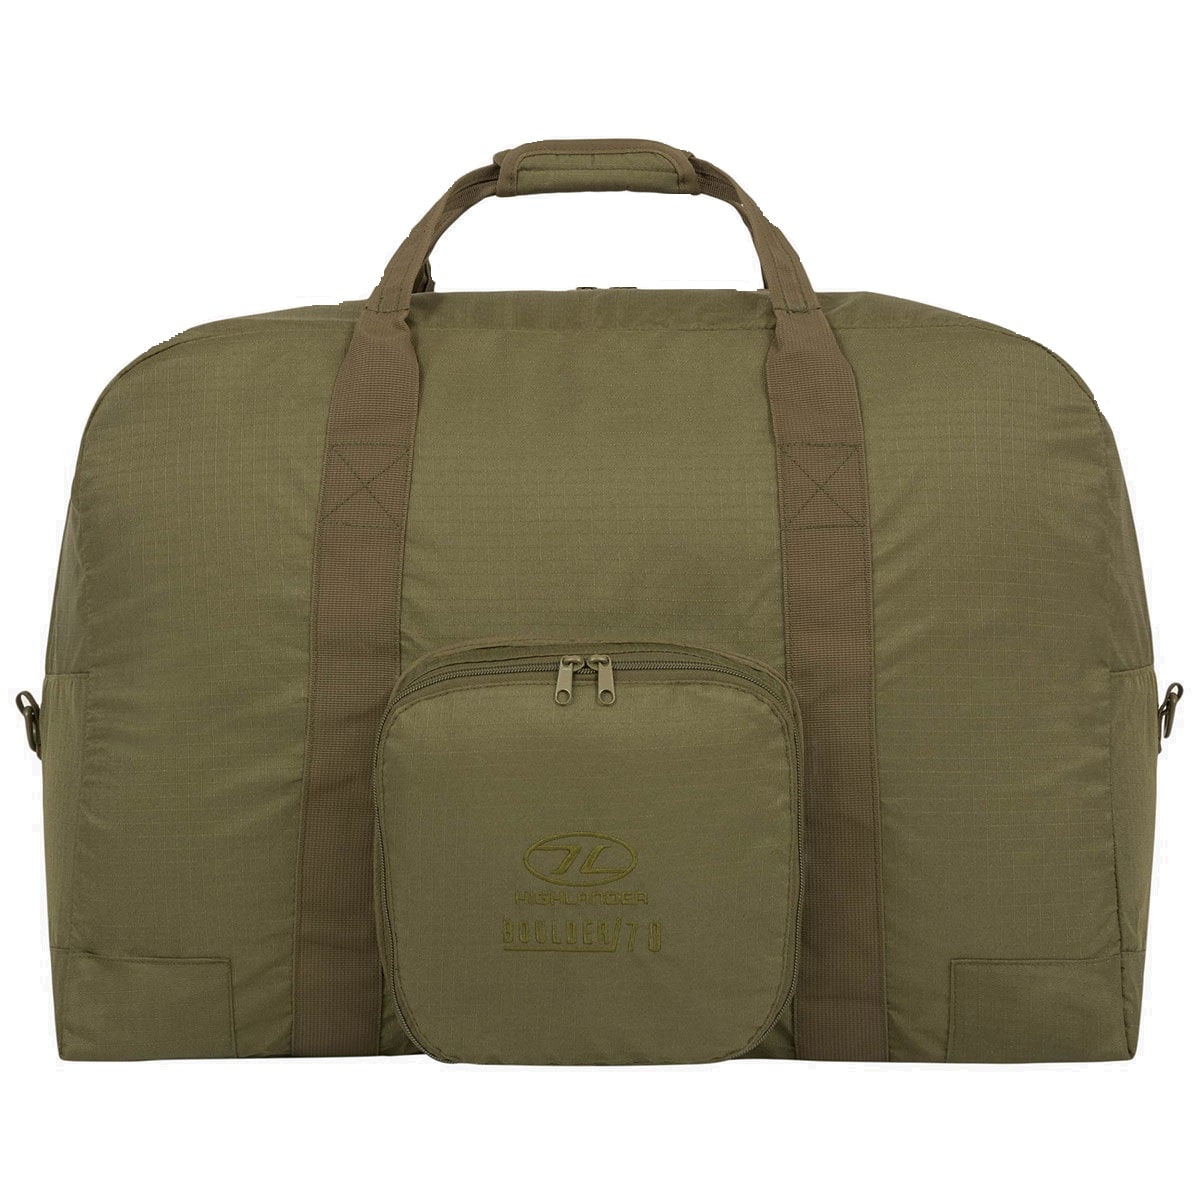 Сумка Highlander Outdoor Boulder Duffle Bag 70 л - Olive